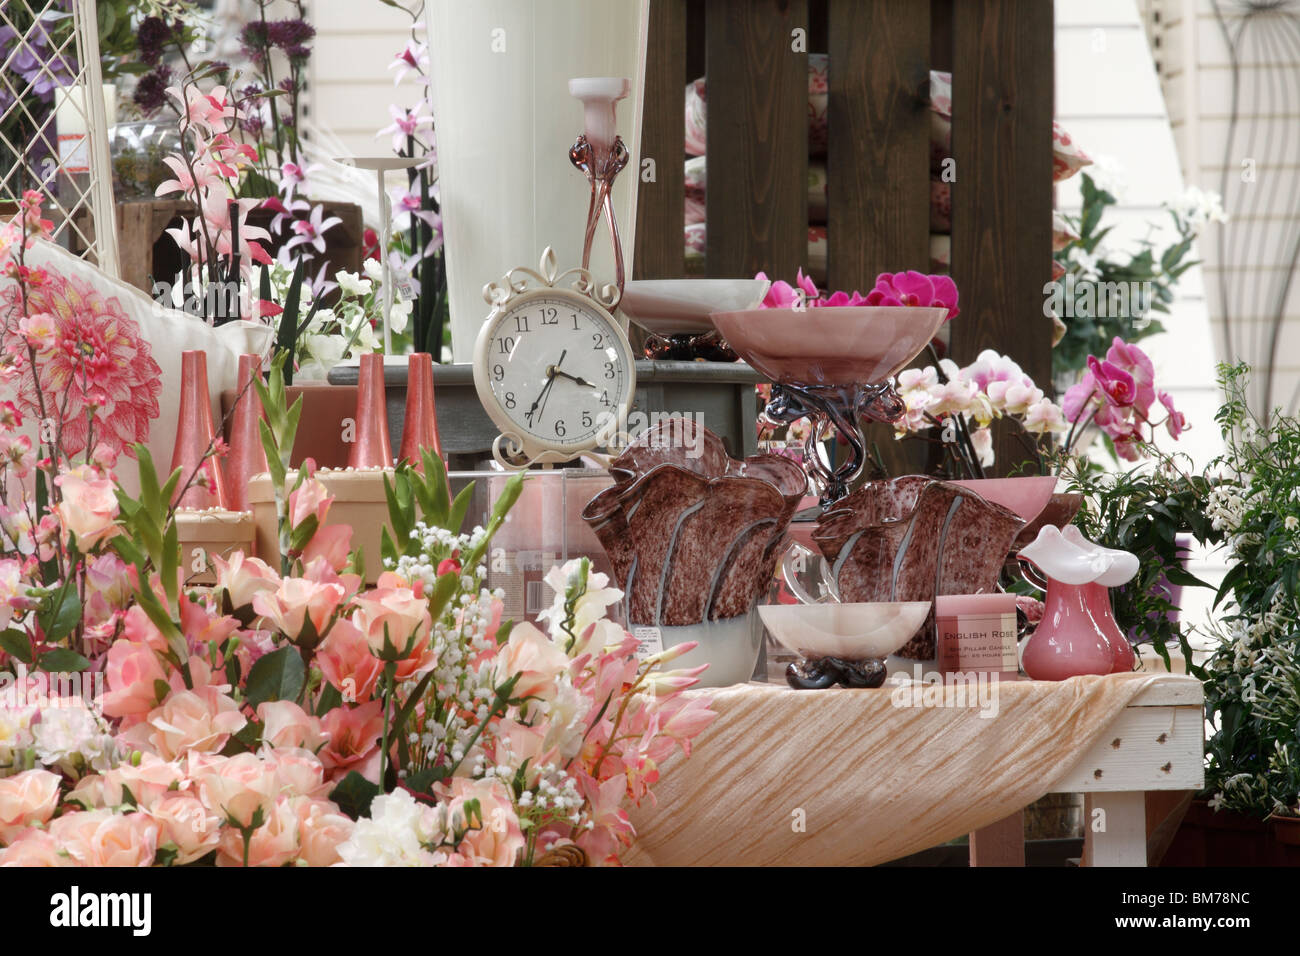 Englische Rosen - die typisch englische Tabelle. Rosen Seidenblumen eine Uhr-Vase Brookfields Gartencenter, Nottingham Stockfoto